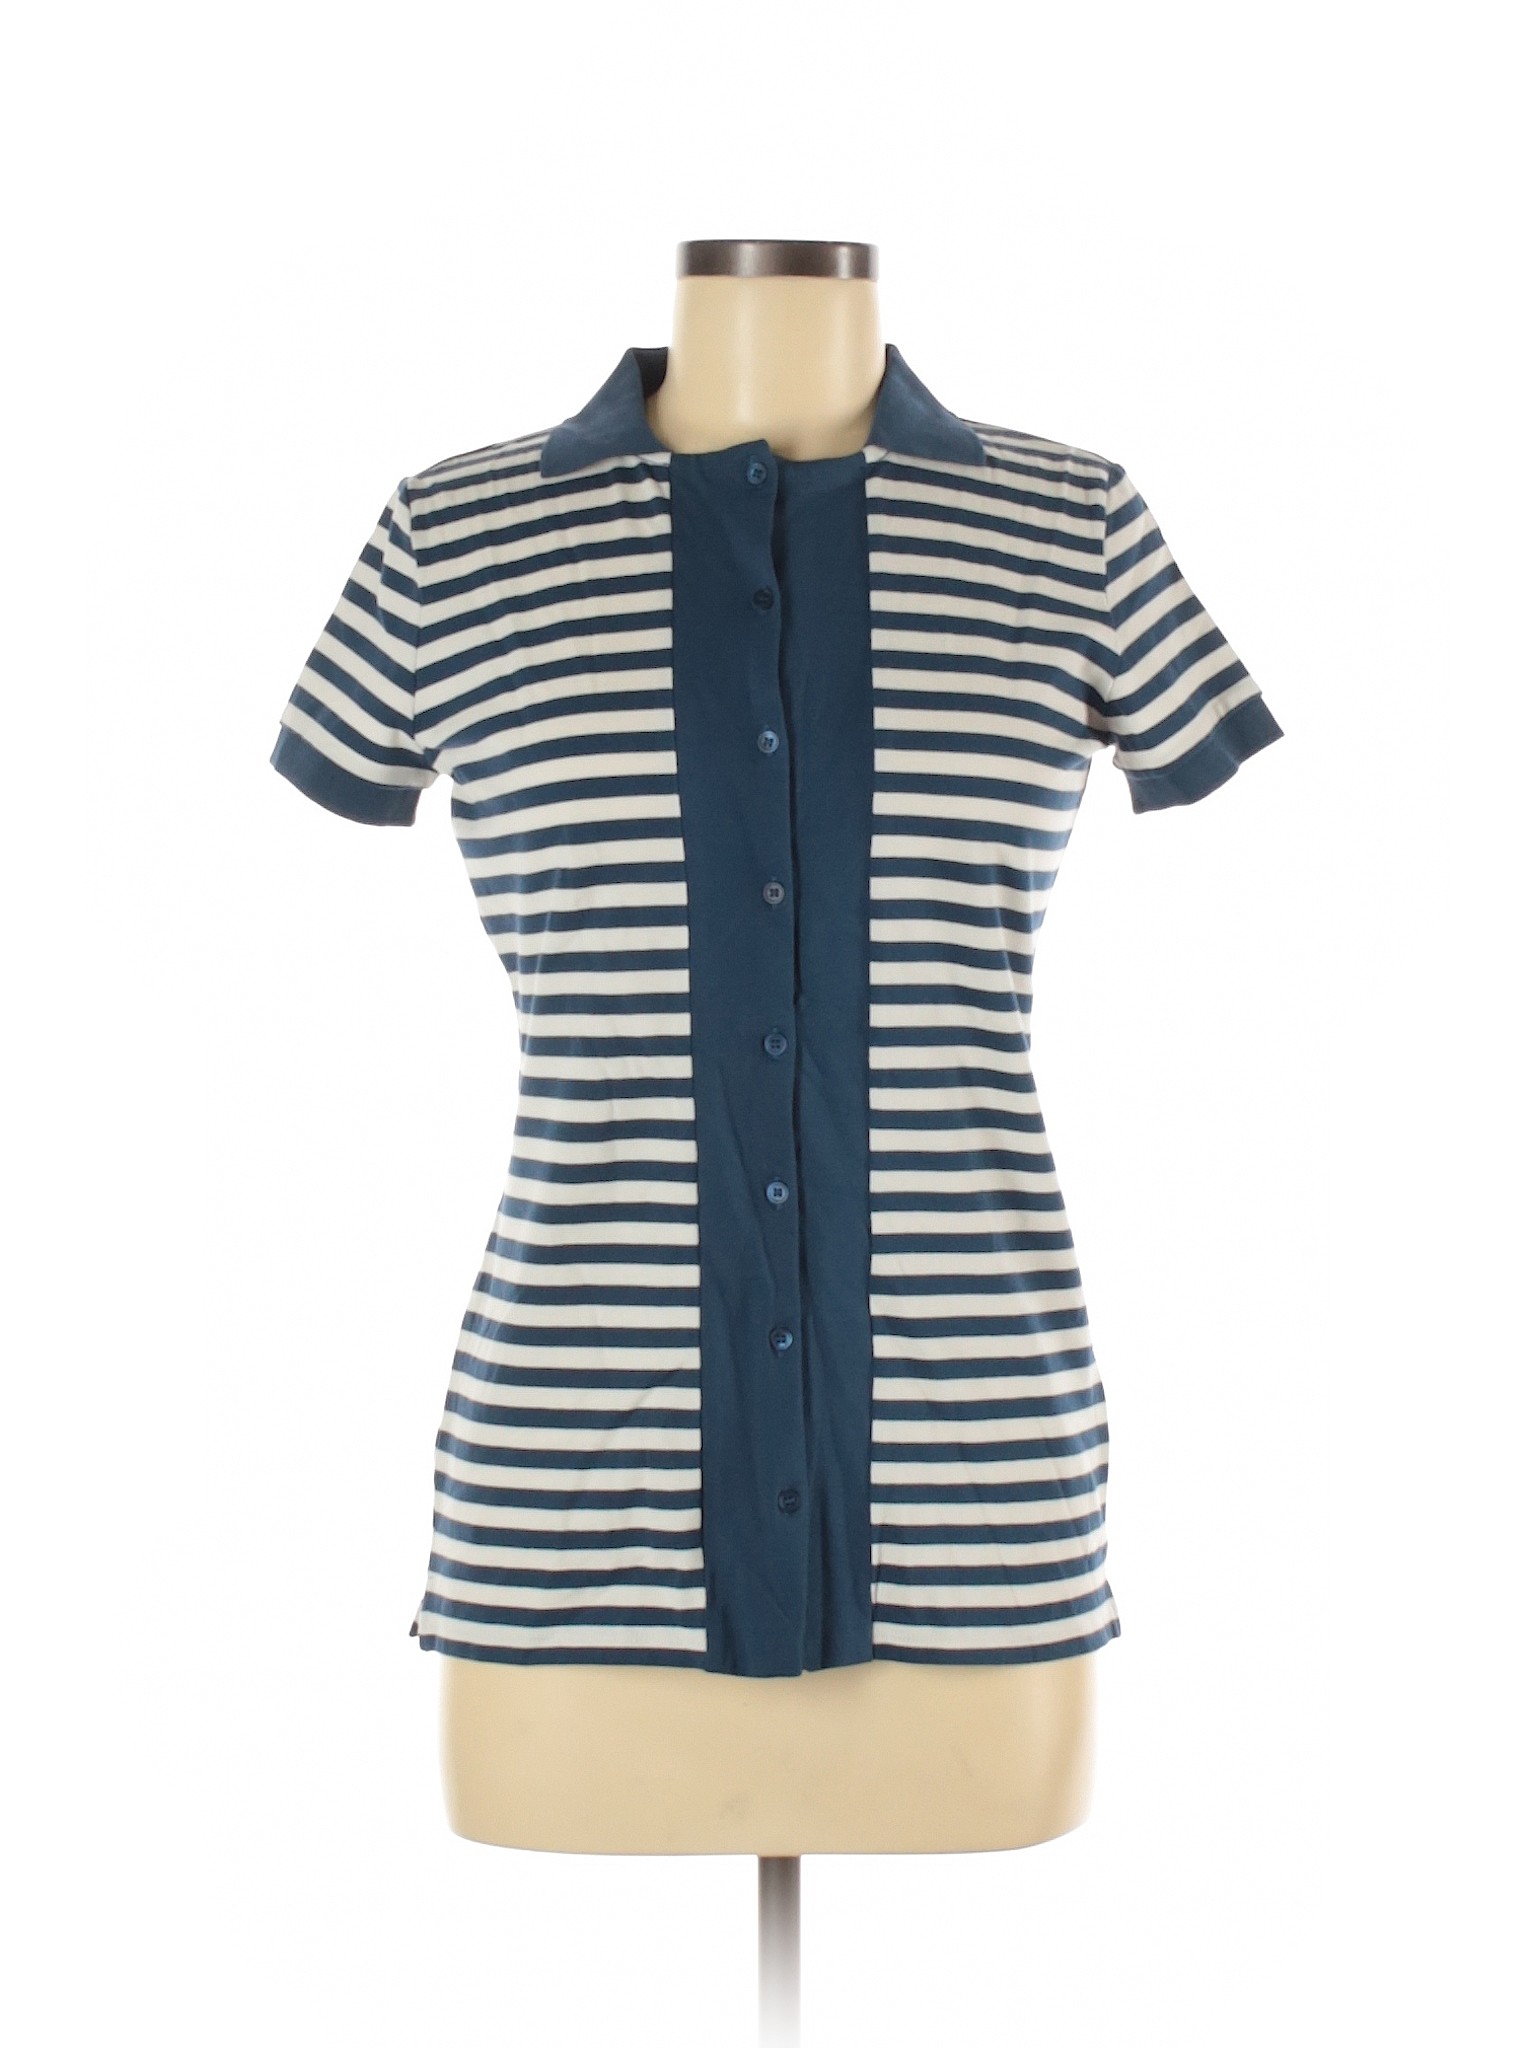 'S Max Mara Stripes Blue Short Sleeve Button-Down Shirt Size M - 82% ...